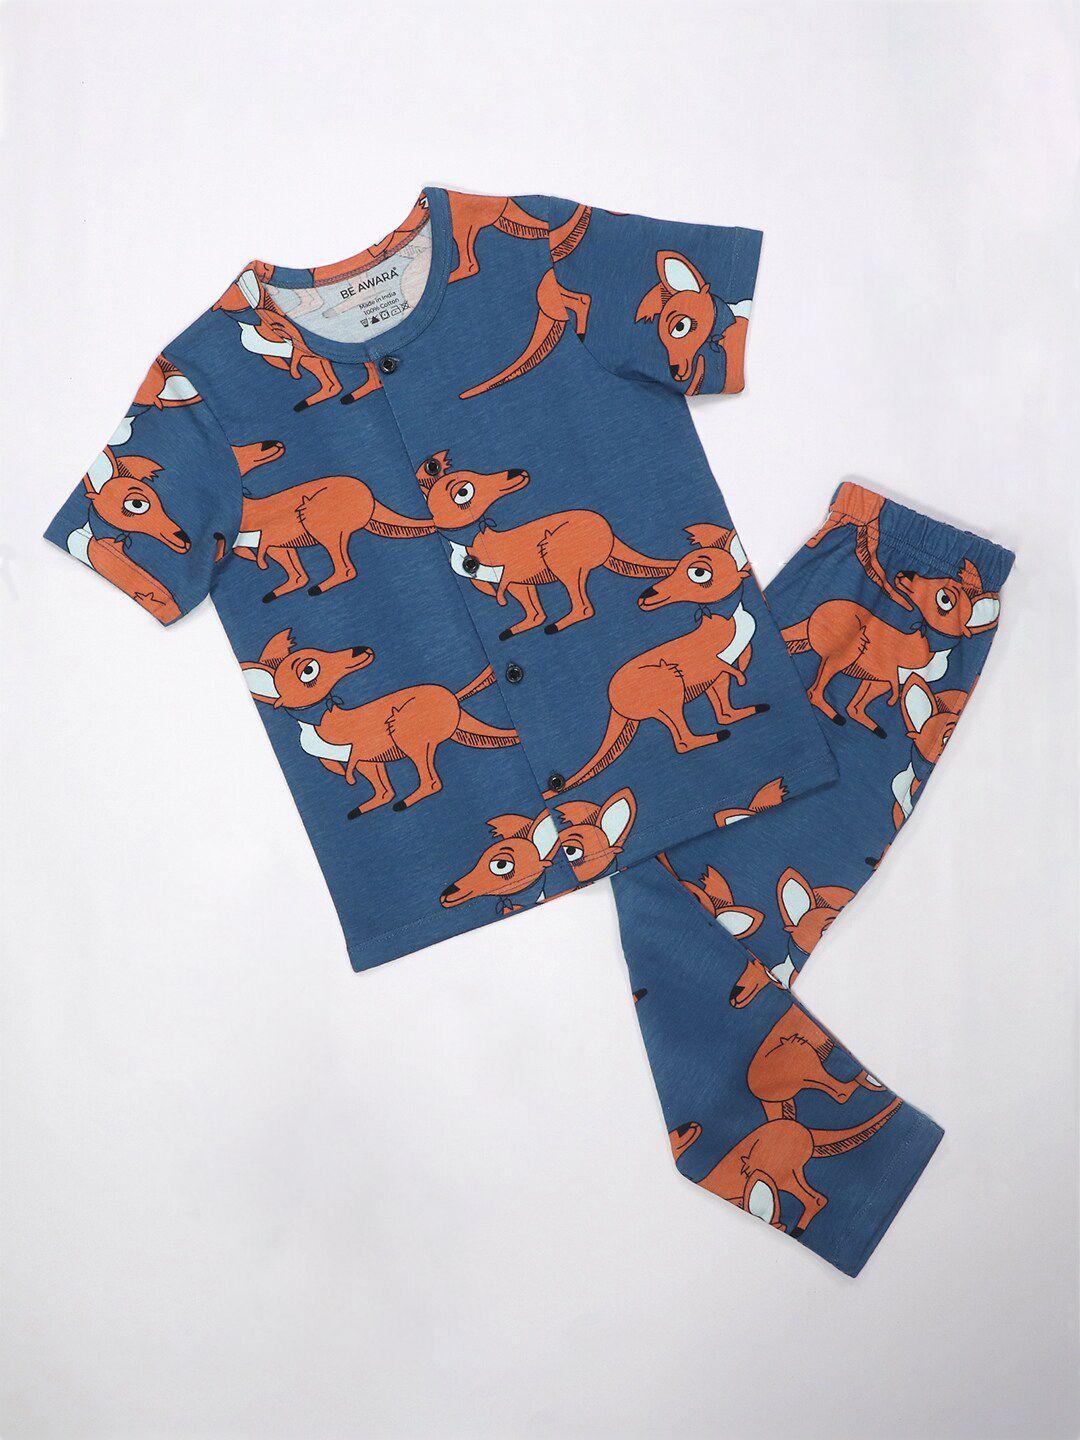 be awara kids kangaroo printed pure cotton night suit